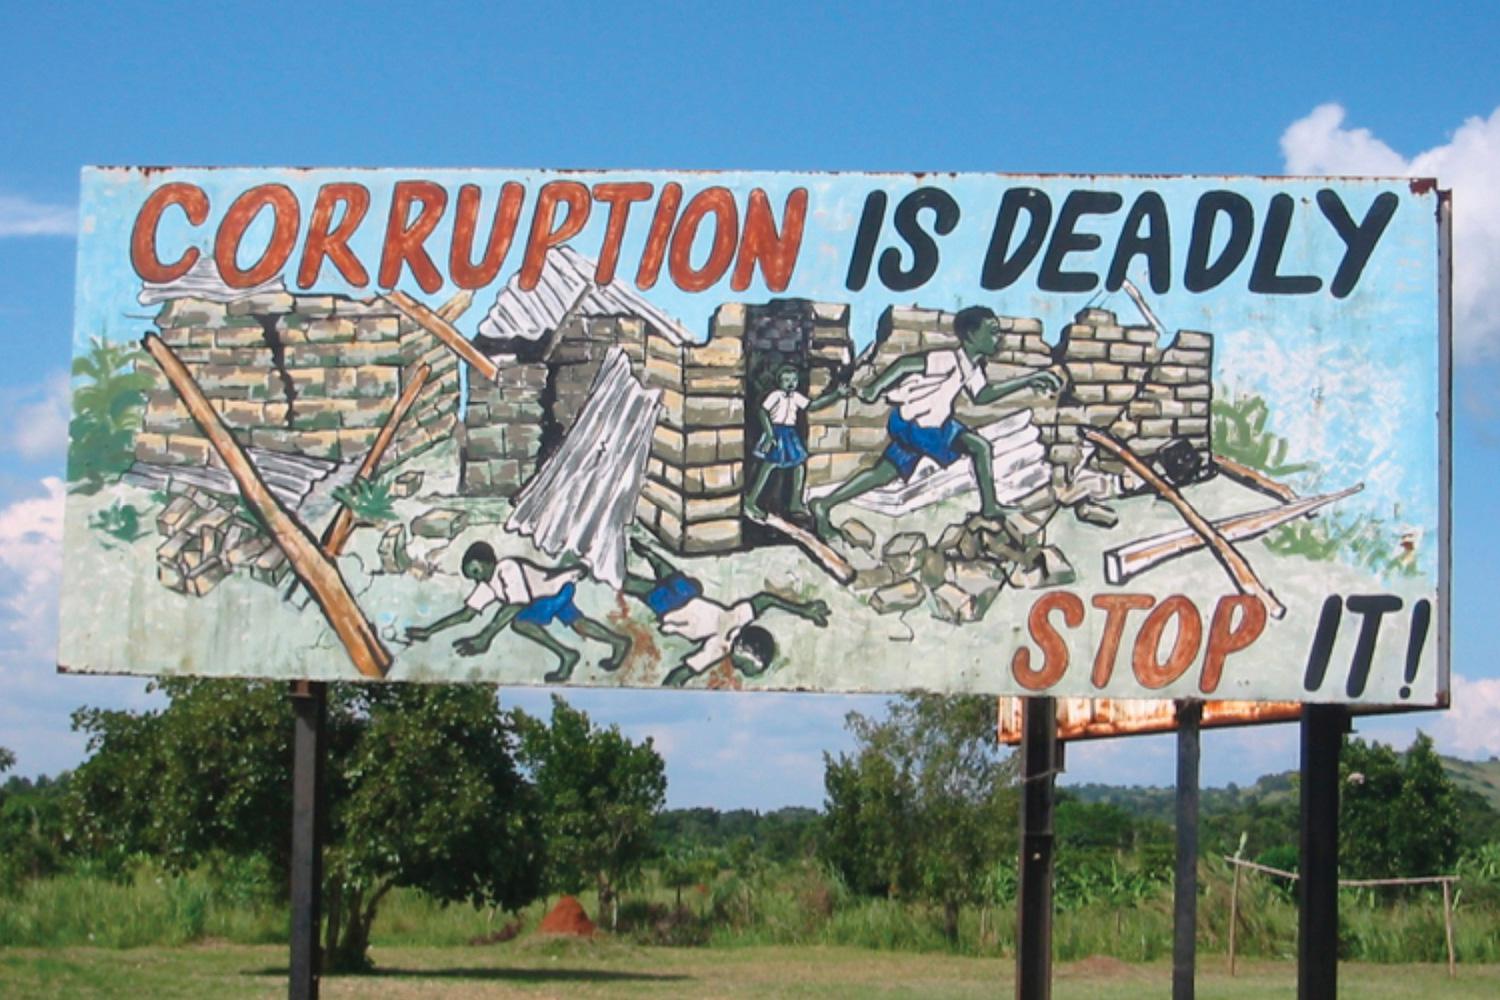 An anti-corruption billboard in Uganda.